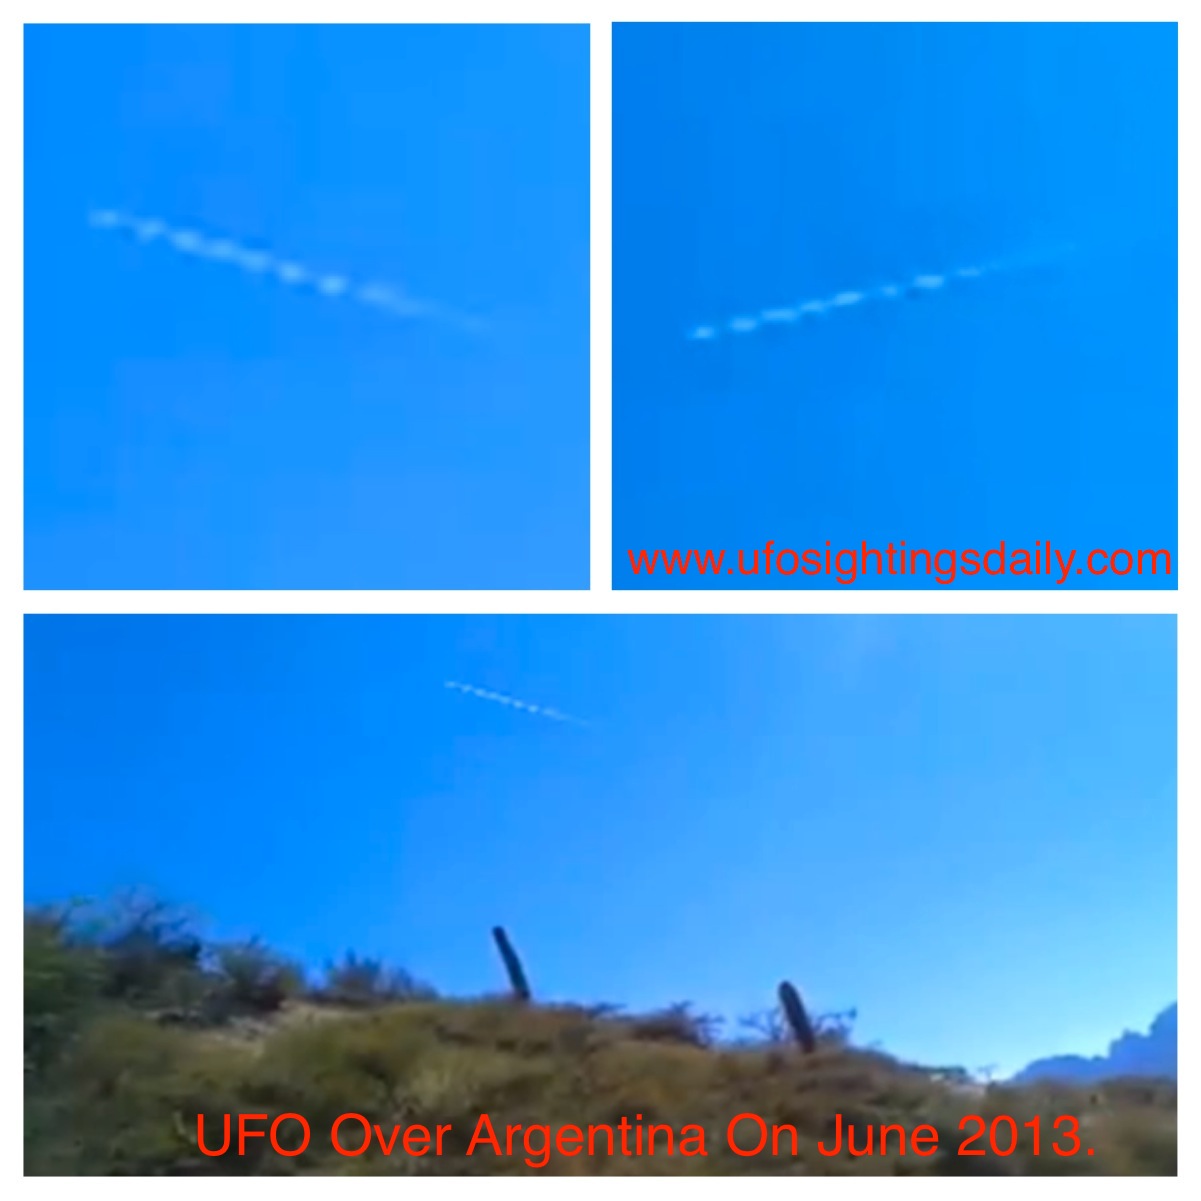 Длинный объект в небе Аргентины (видео)